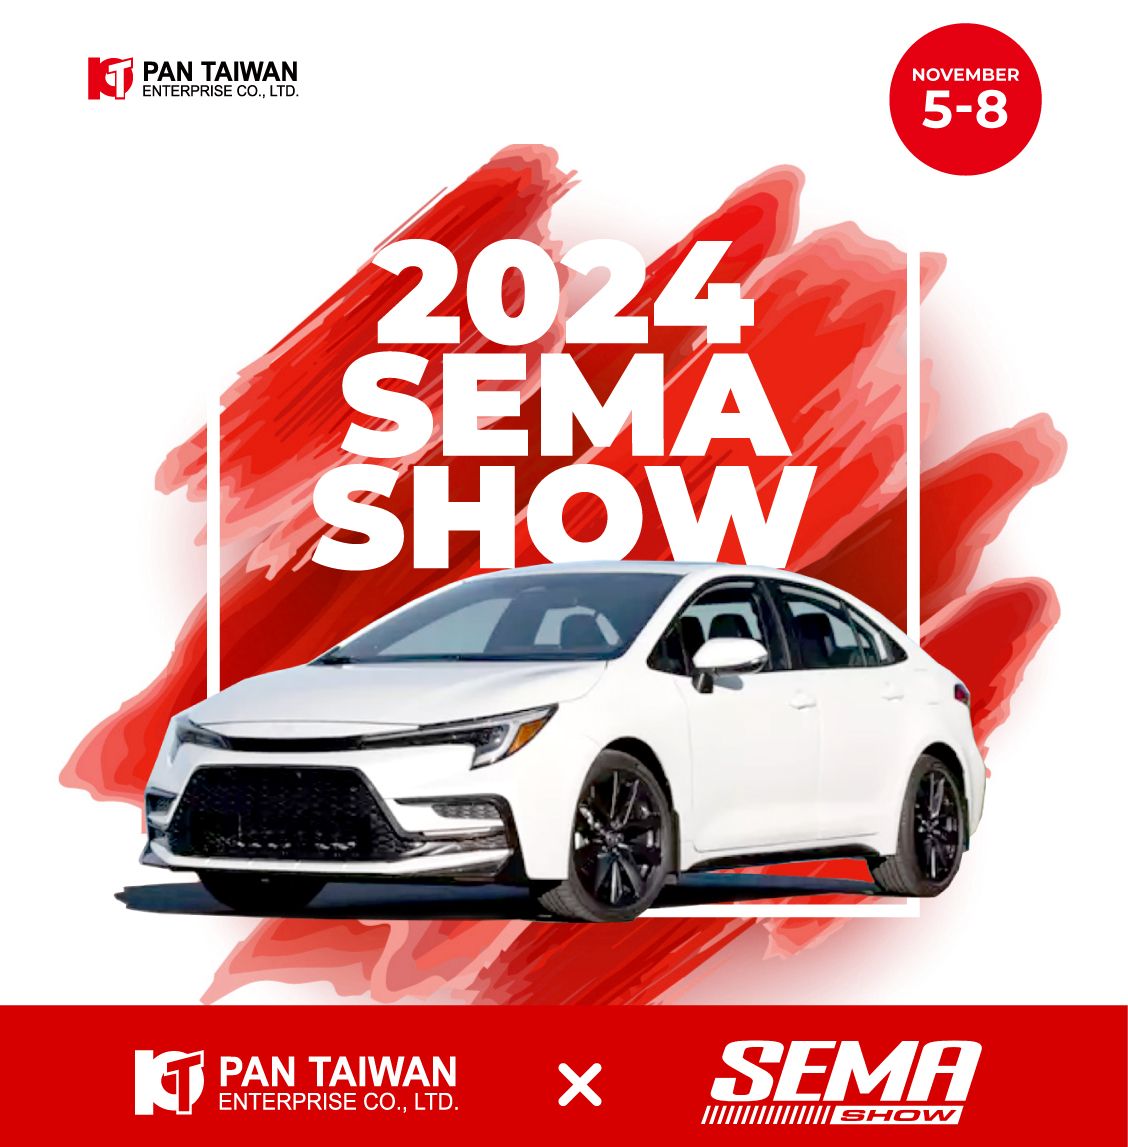 Pan Taiwan, um importante fabricante de peças automotivas com sede em Taiwan, tem o prazer de anunciar que estaremos exibindo nossos produtos inovadores na SEMA Show em Las Vegas de 5 a 8 de novembro de 2024.